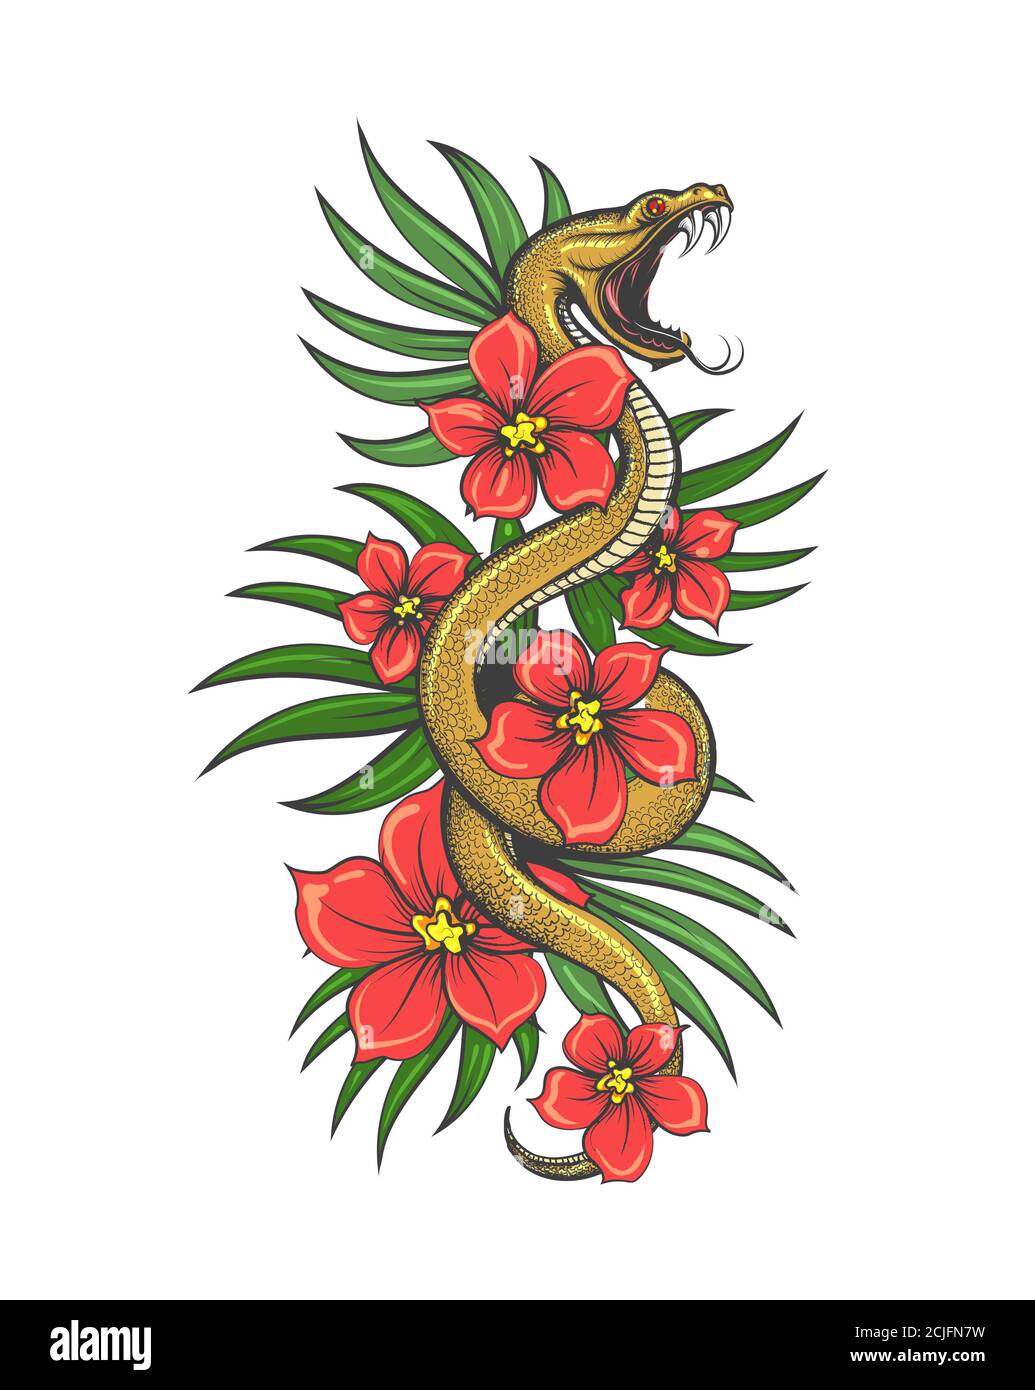 Serpent rampant avec des fleurs et des feuilles d'herbe. Illustration dessinée à la main en style tatouage. Illustration vectorielle. Illustration de Vecteur